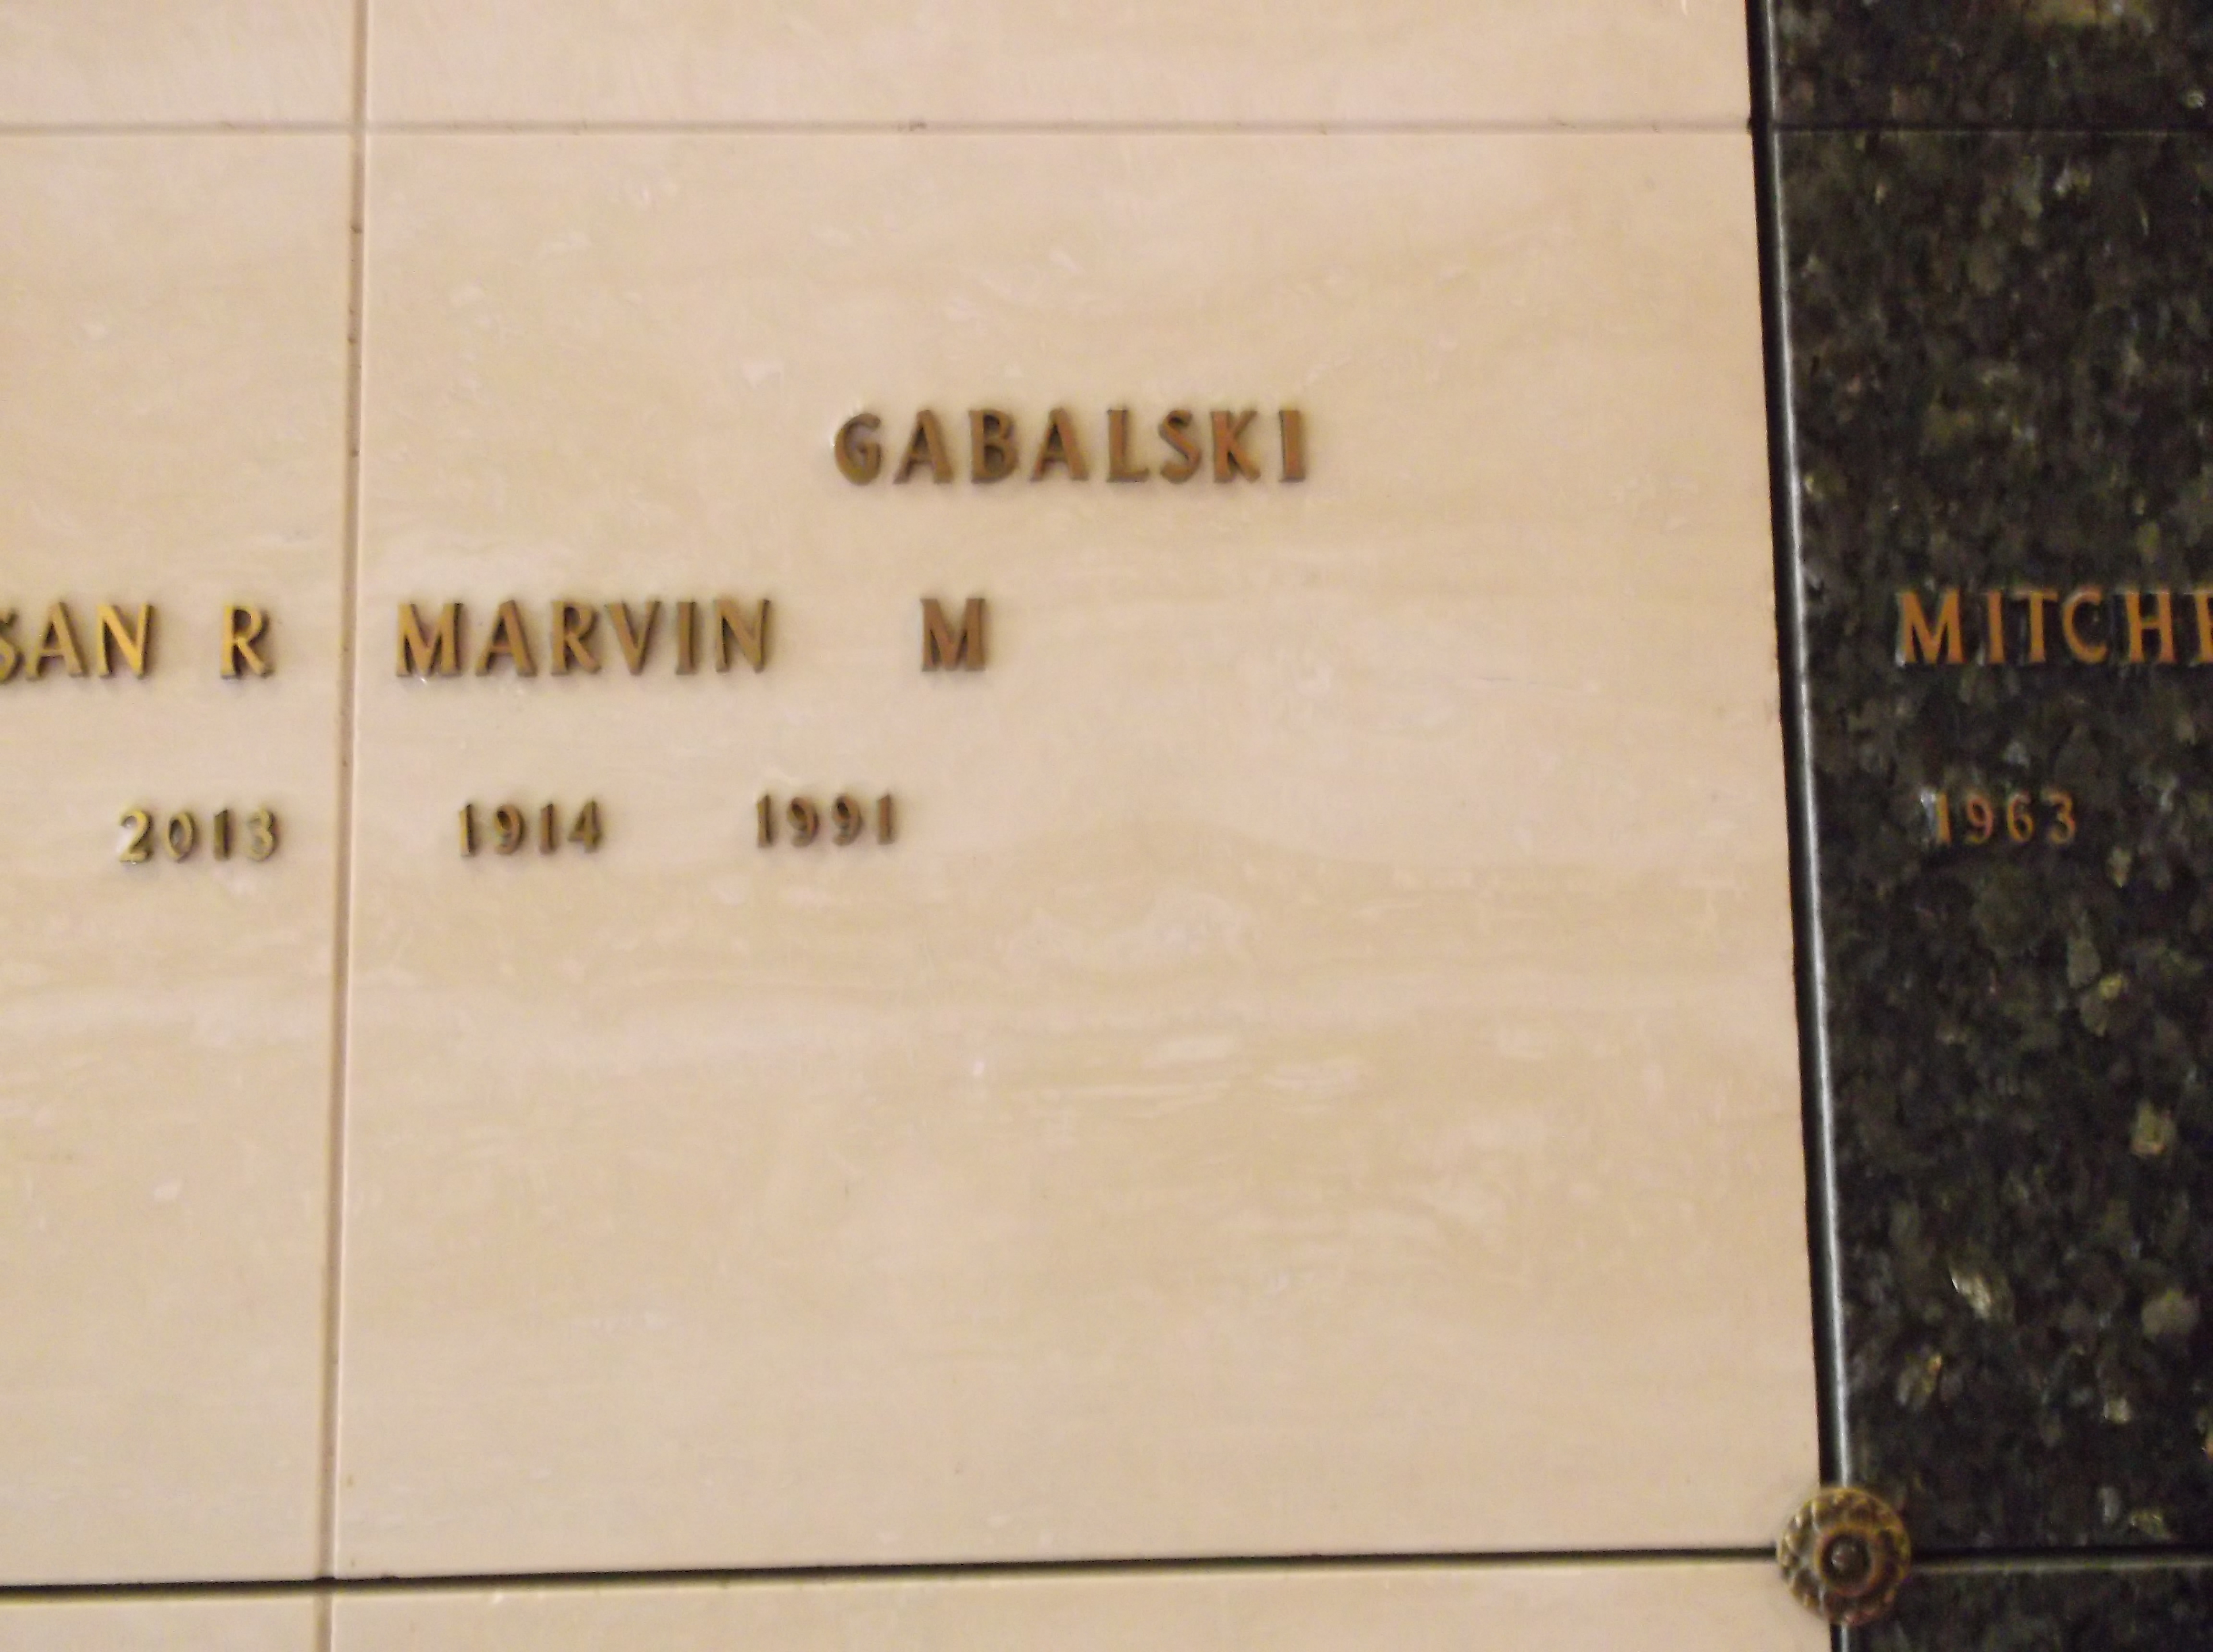 Marvin M Gabalski